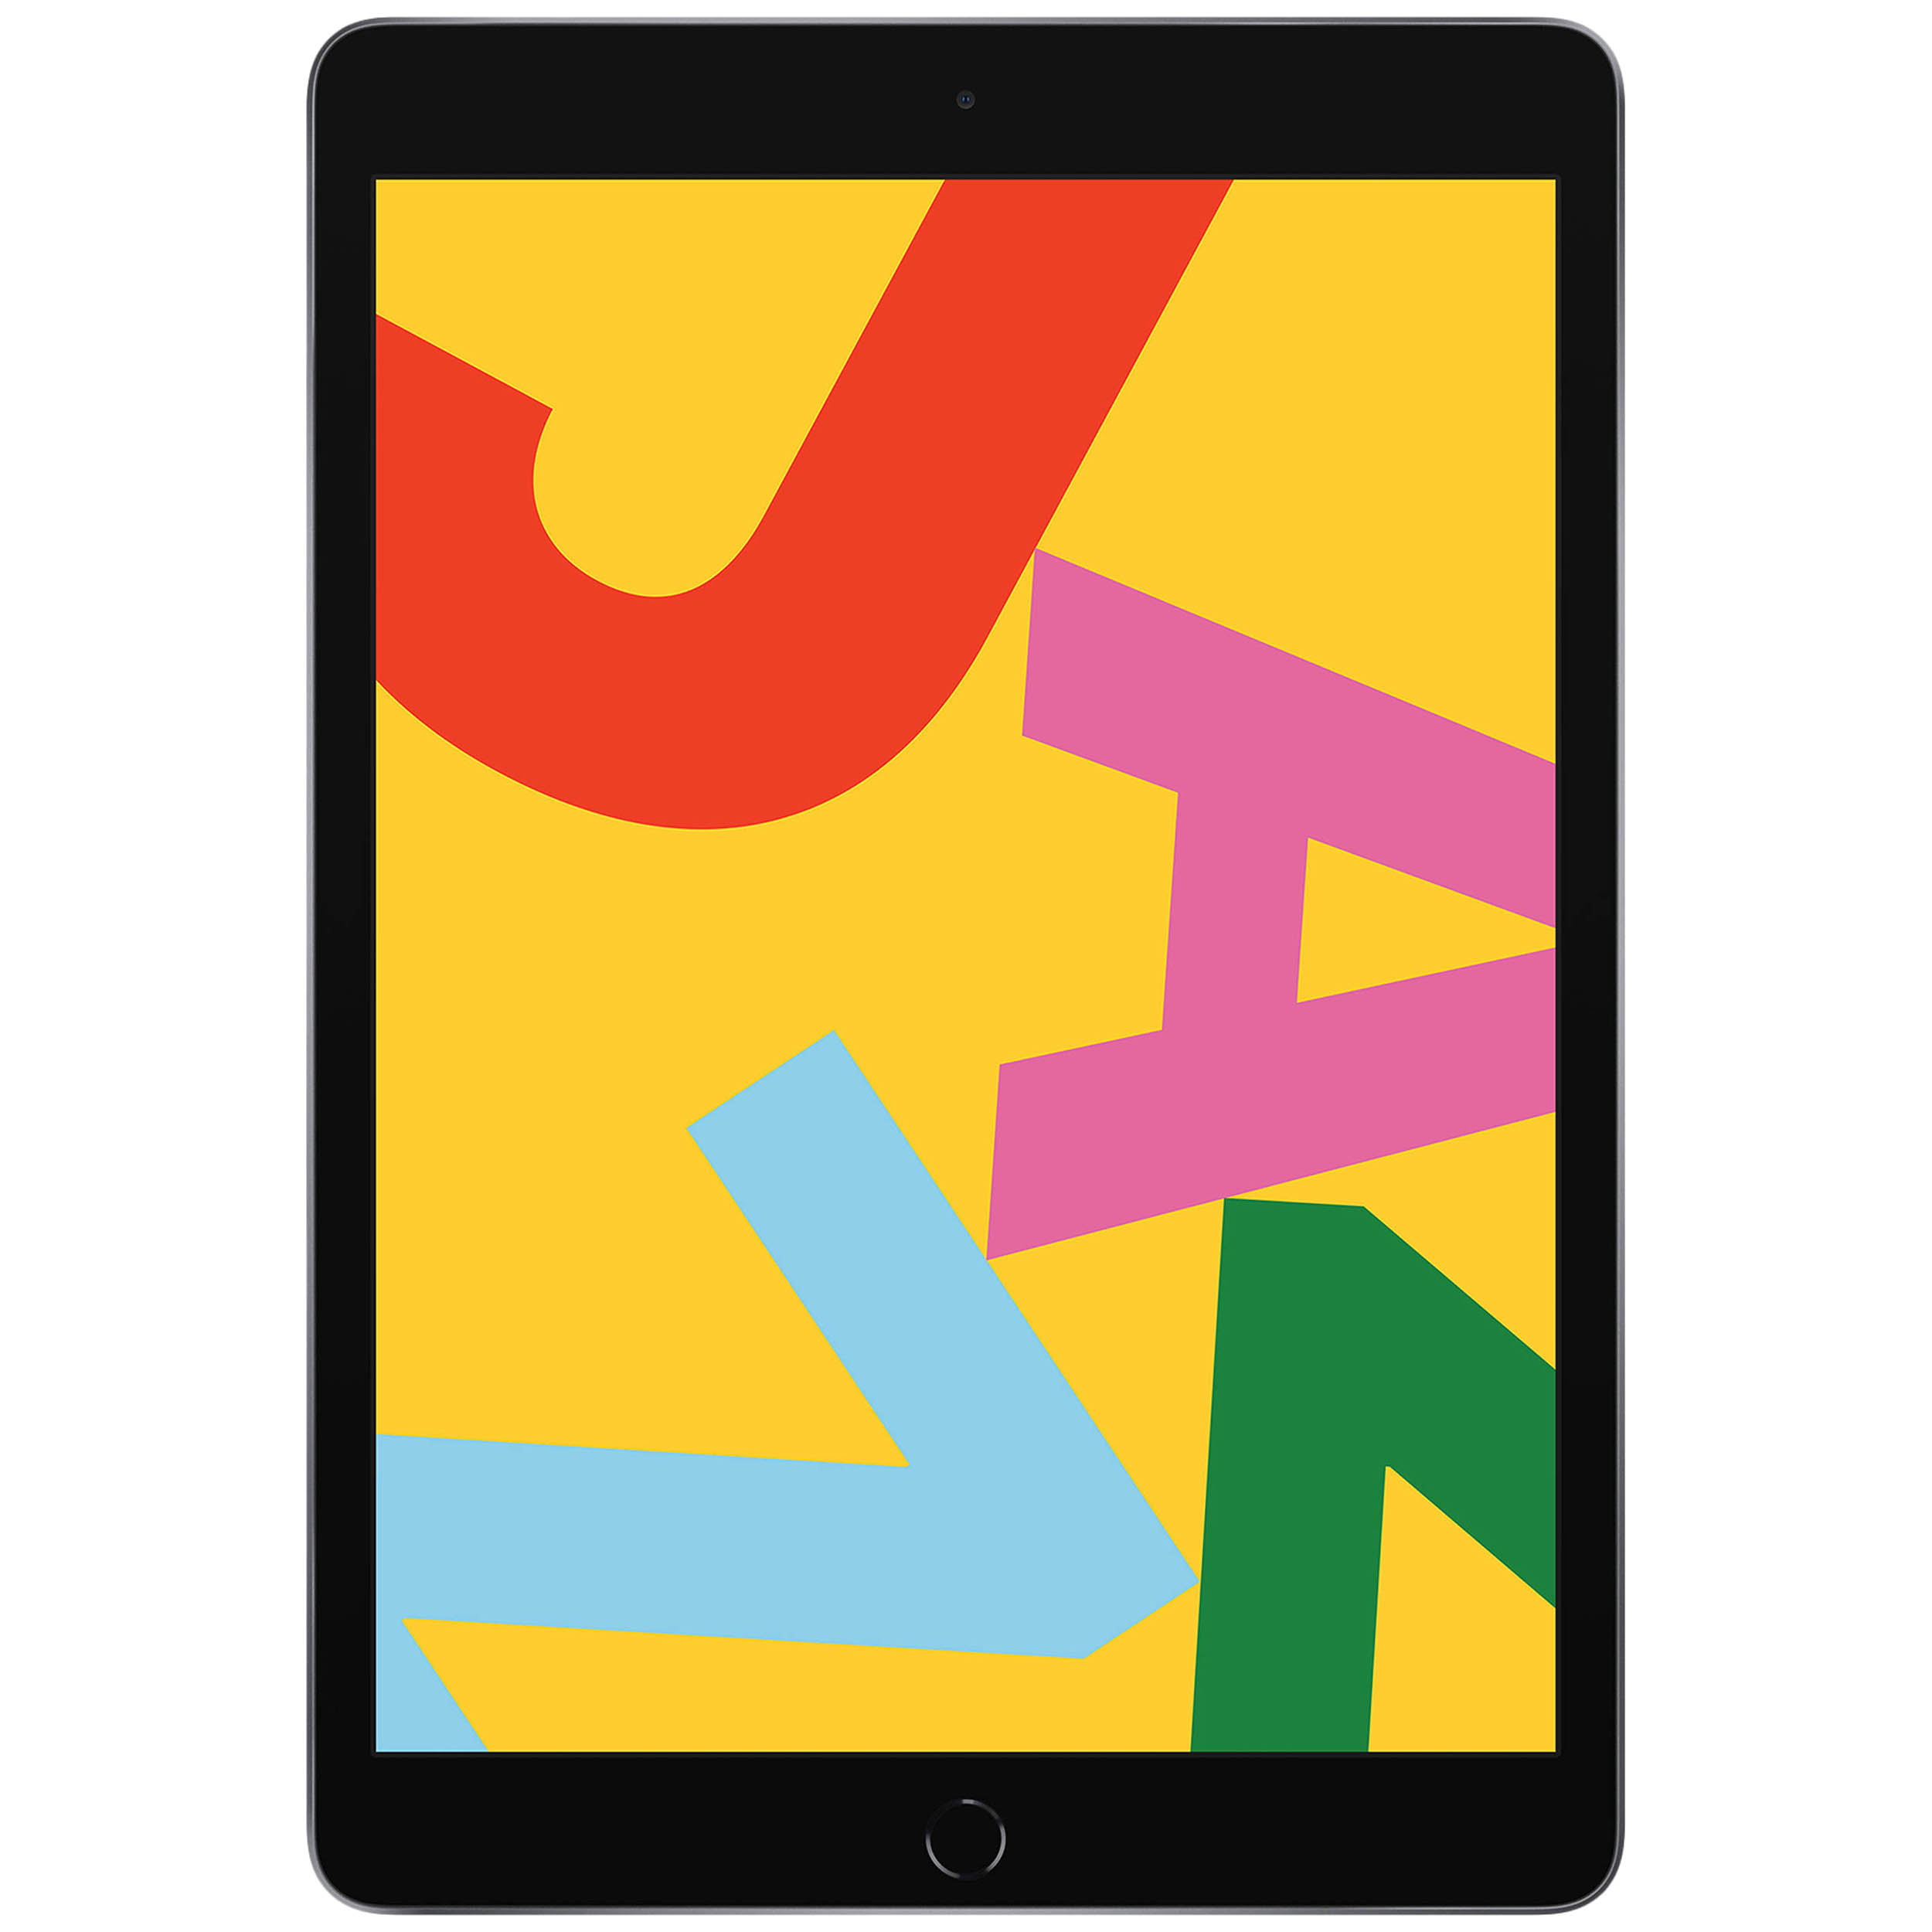 آنباکس تبلت اپل مدل iPad 10.2 inch 2019 WiFi ظرفیت 32 گیگابایت توسط متین مهزاد در تاریخ ۰۳ تیر ۱۳۹۹